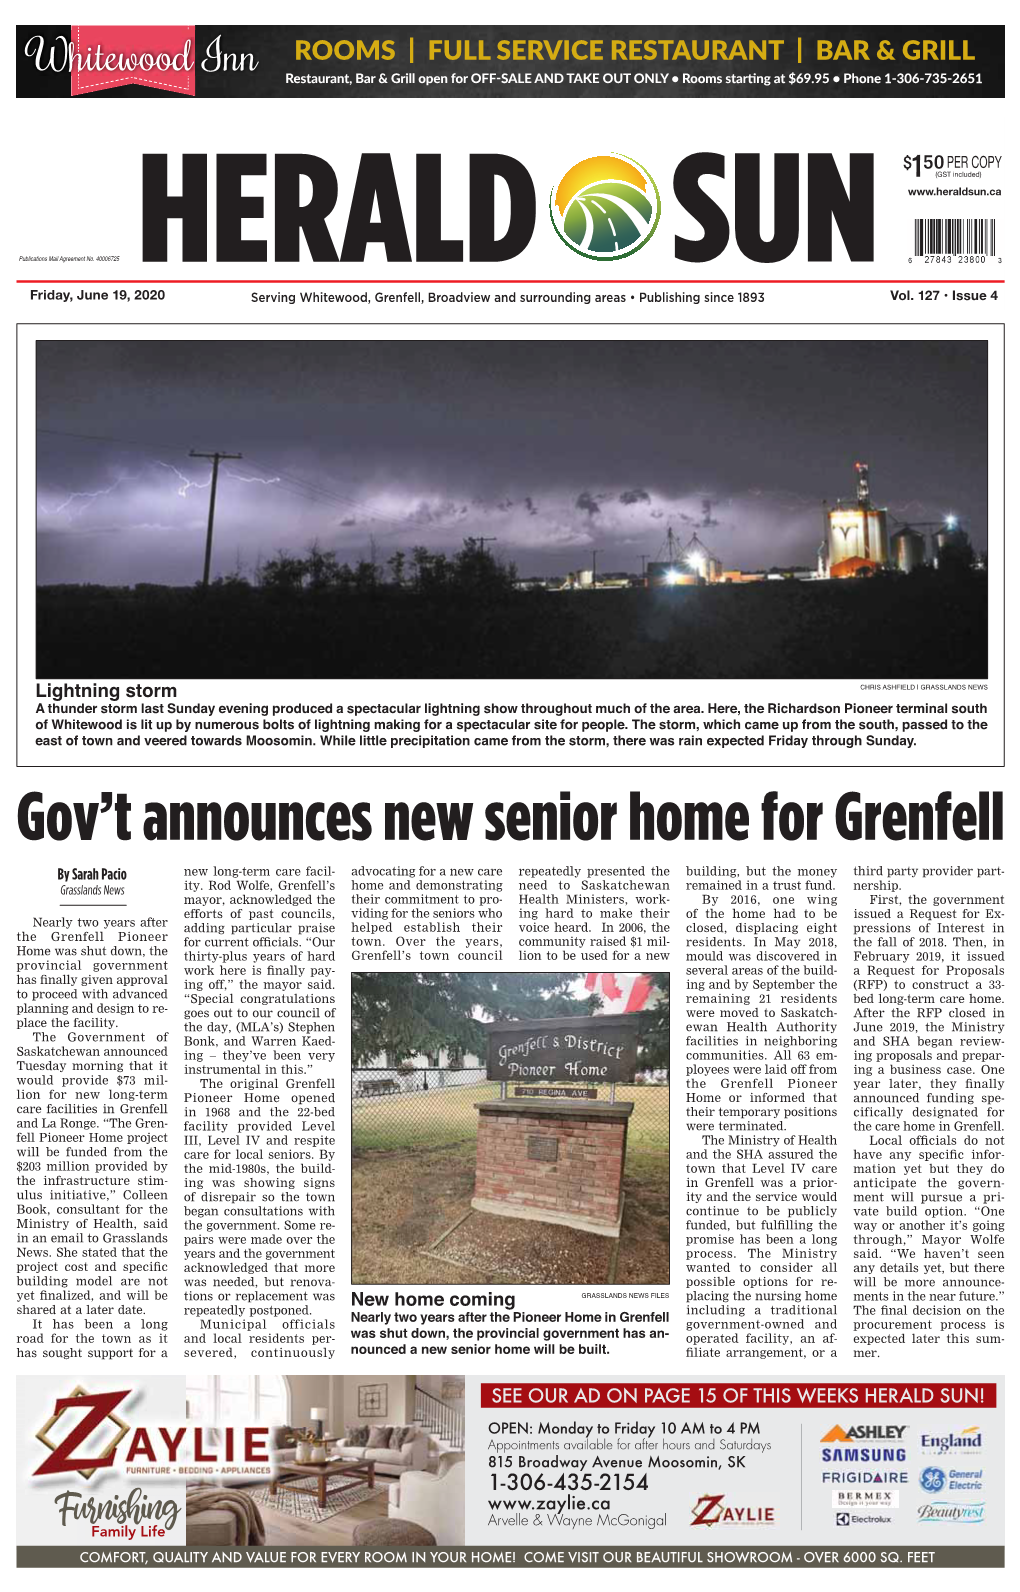 Gov't Announces New Senior Home for Grenfell